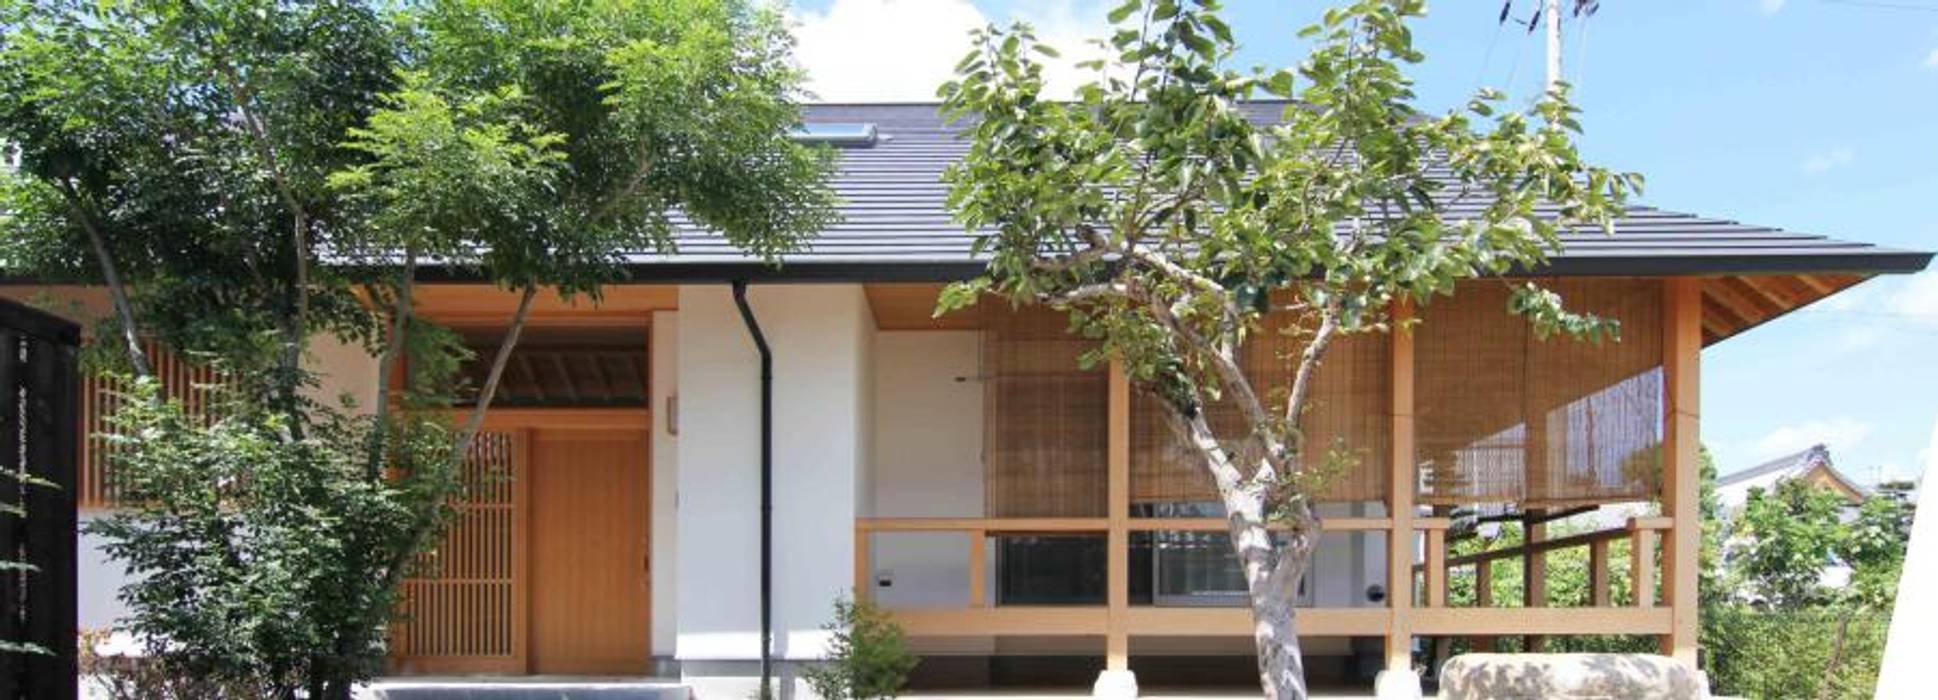 むくり屋根の家, 永井政光建築設計事務所 永井政光建築設計事務所 Wooden houses